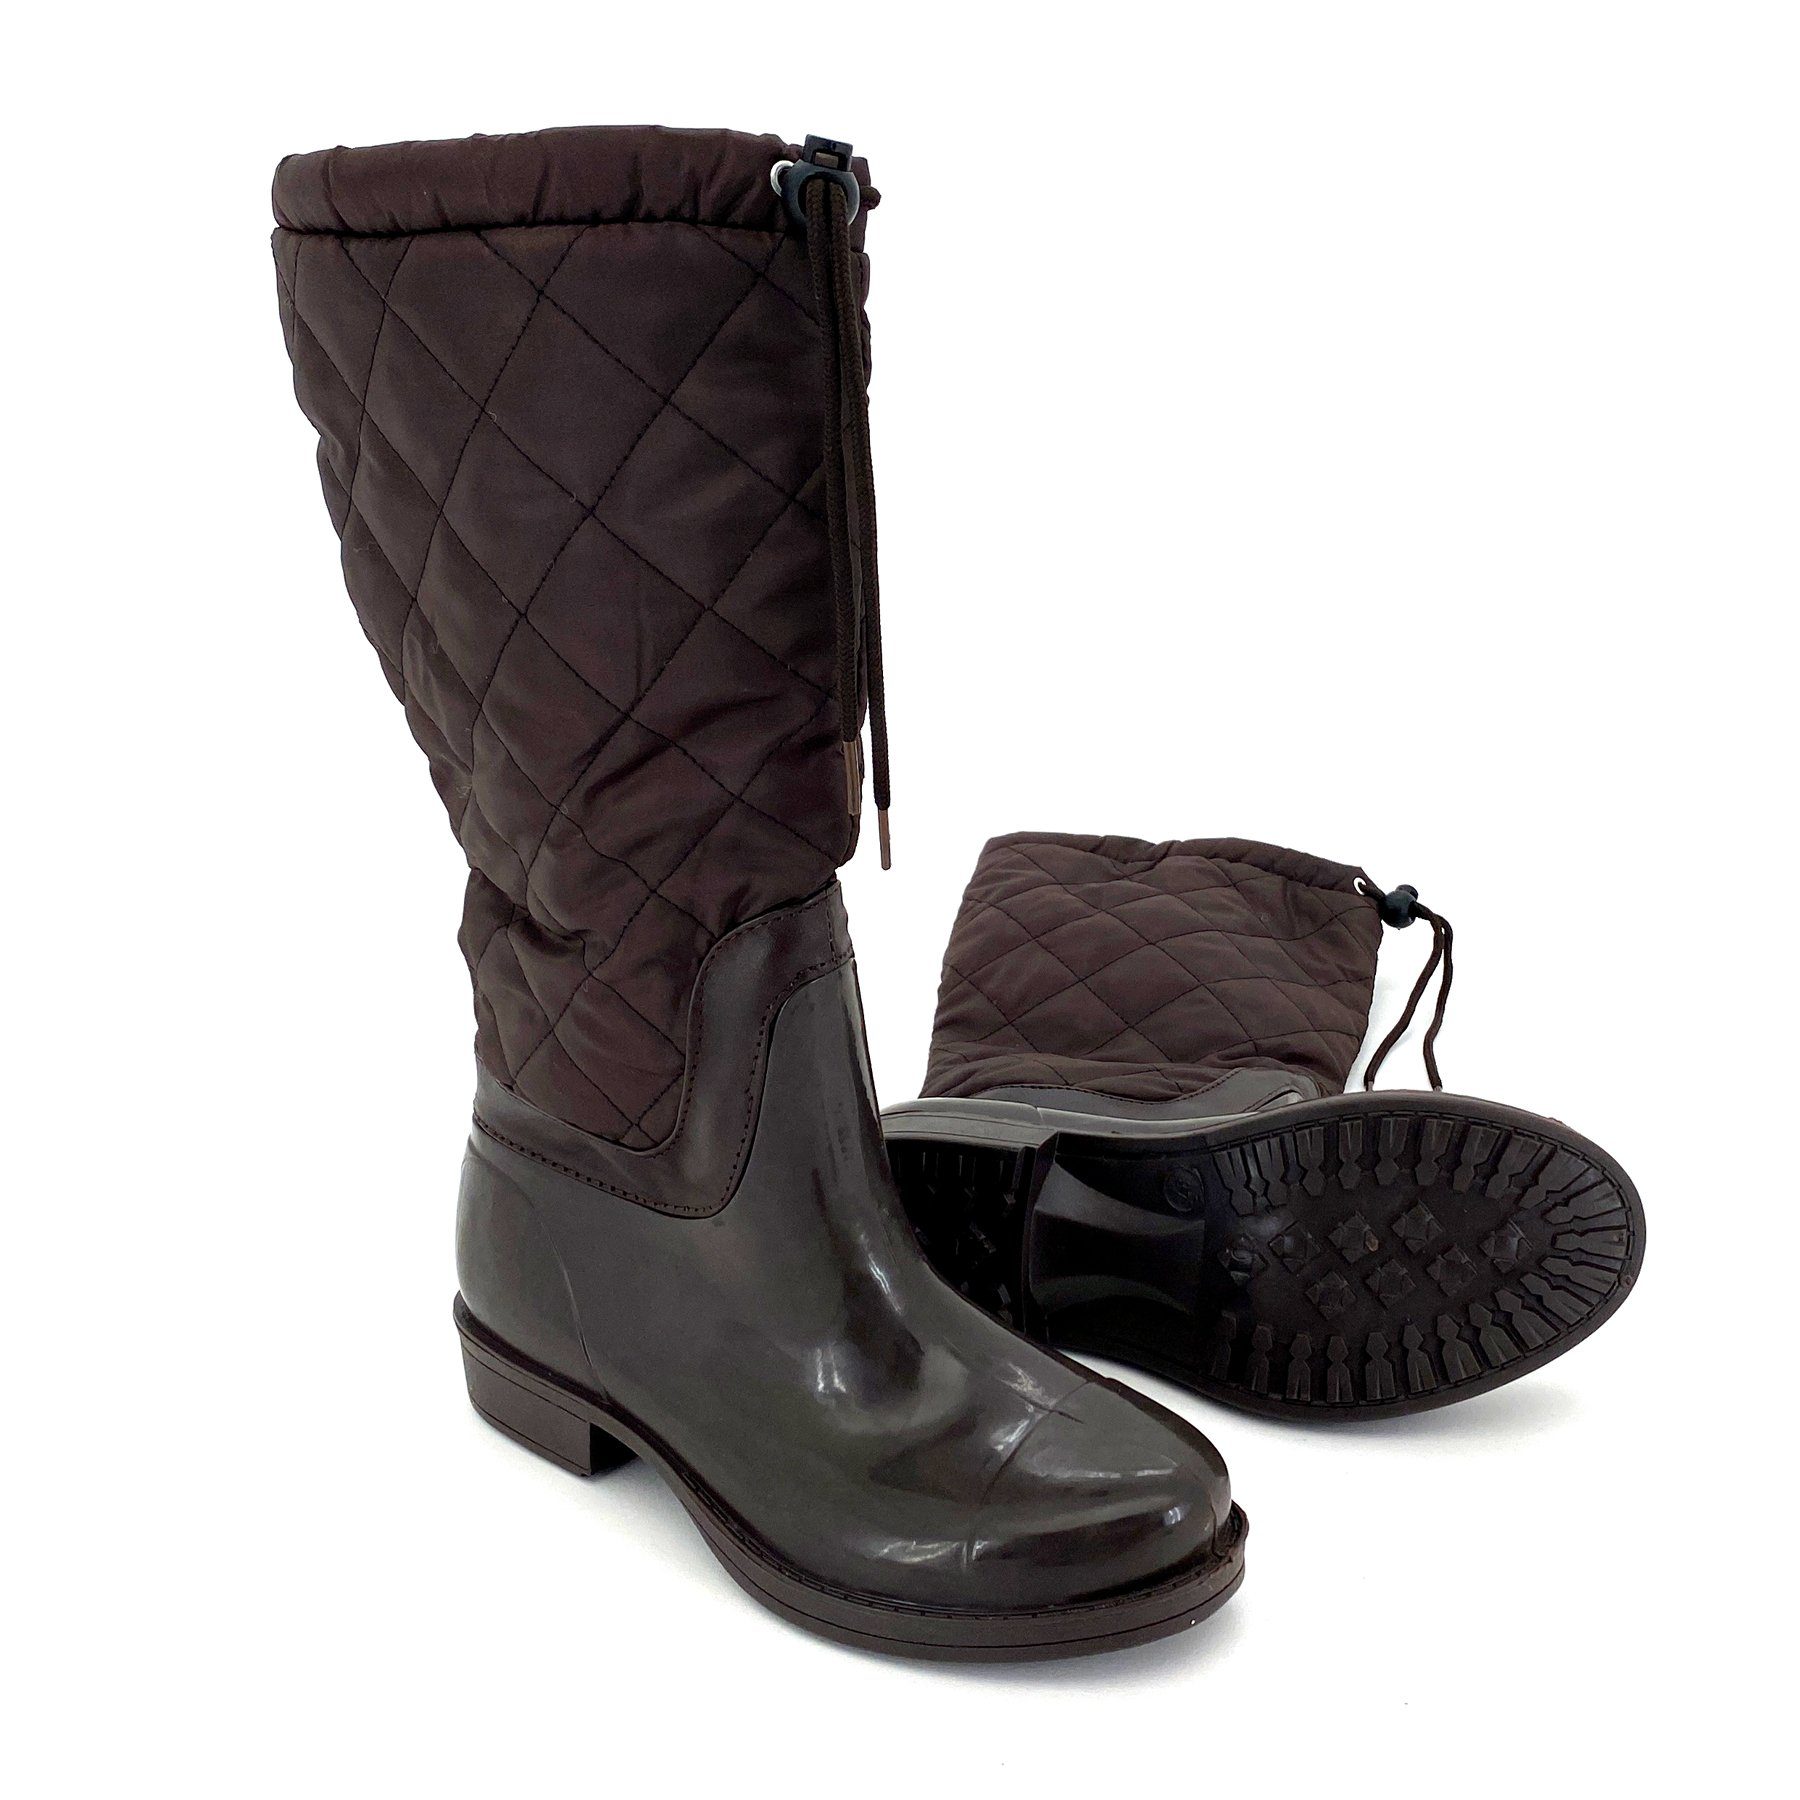 heimtexland Gummistiefel Daunen Stiefel Hochschaft Trend Boots Gummistiefel (Typ880) gesteppt I wasserdicht I Damen Mädchen Regenstiefel Braun